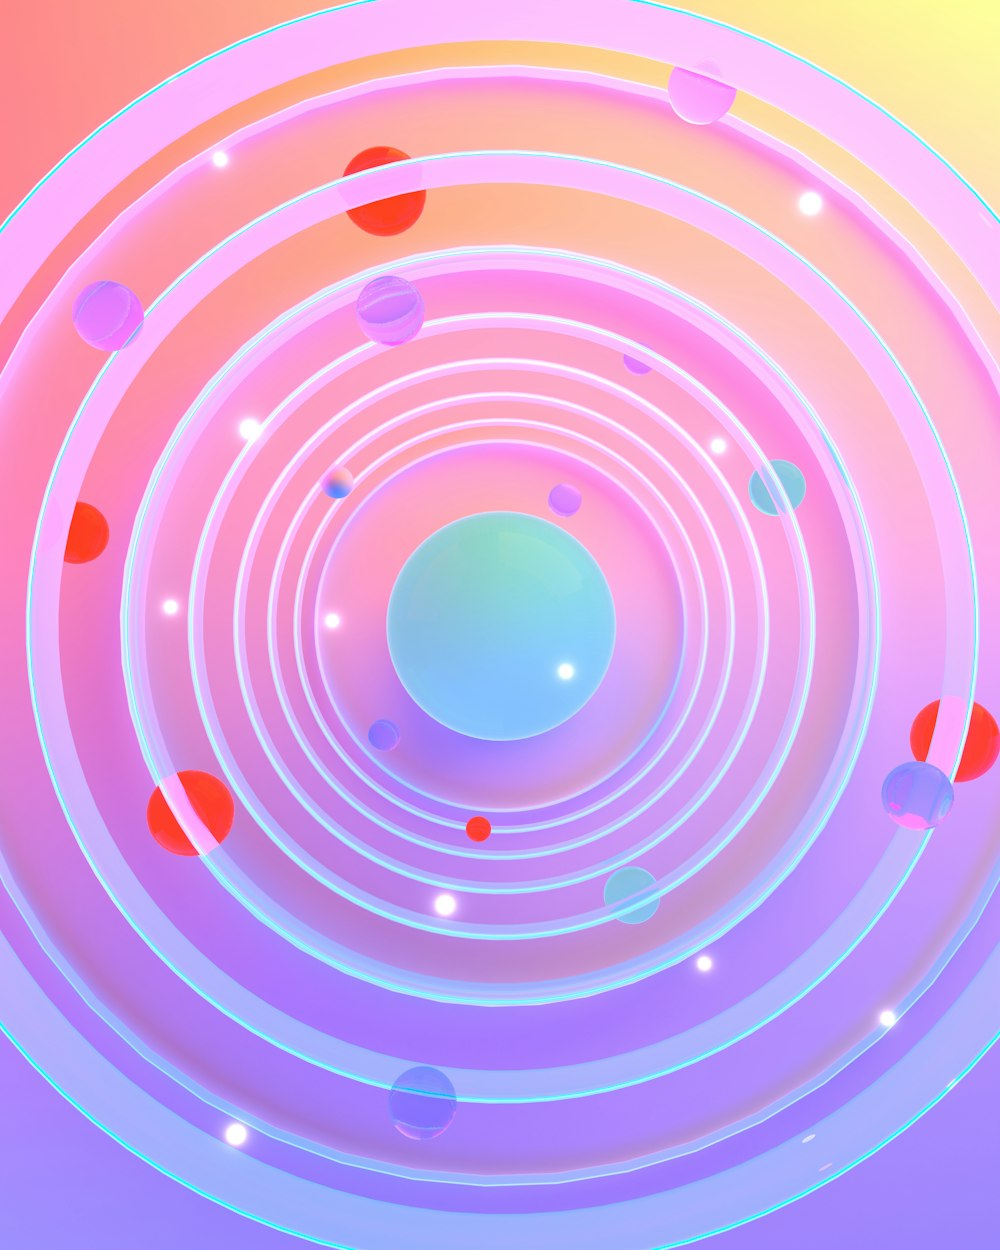 青い中心を持つ円形のオブジェクトの抽象的な写真